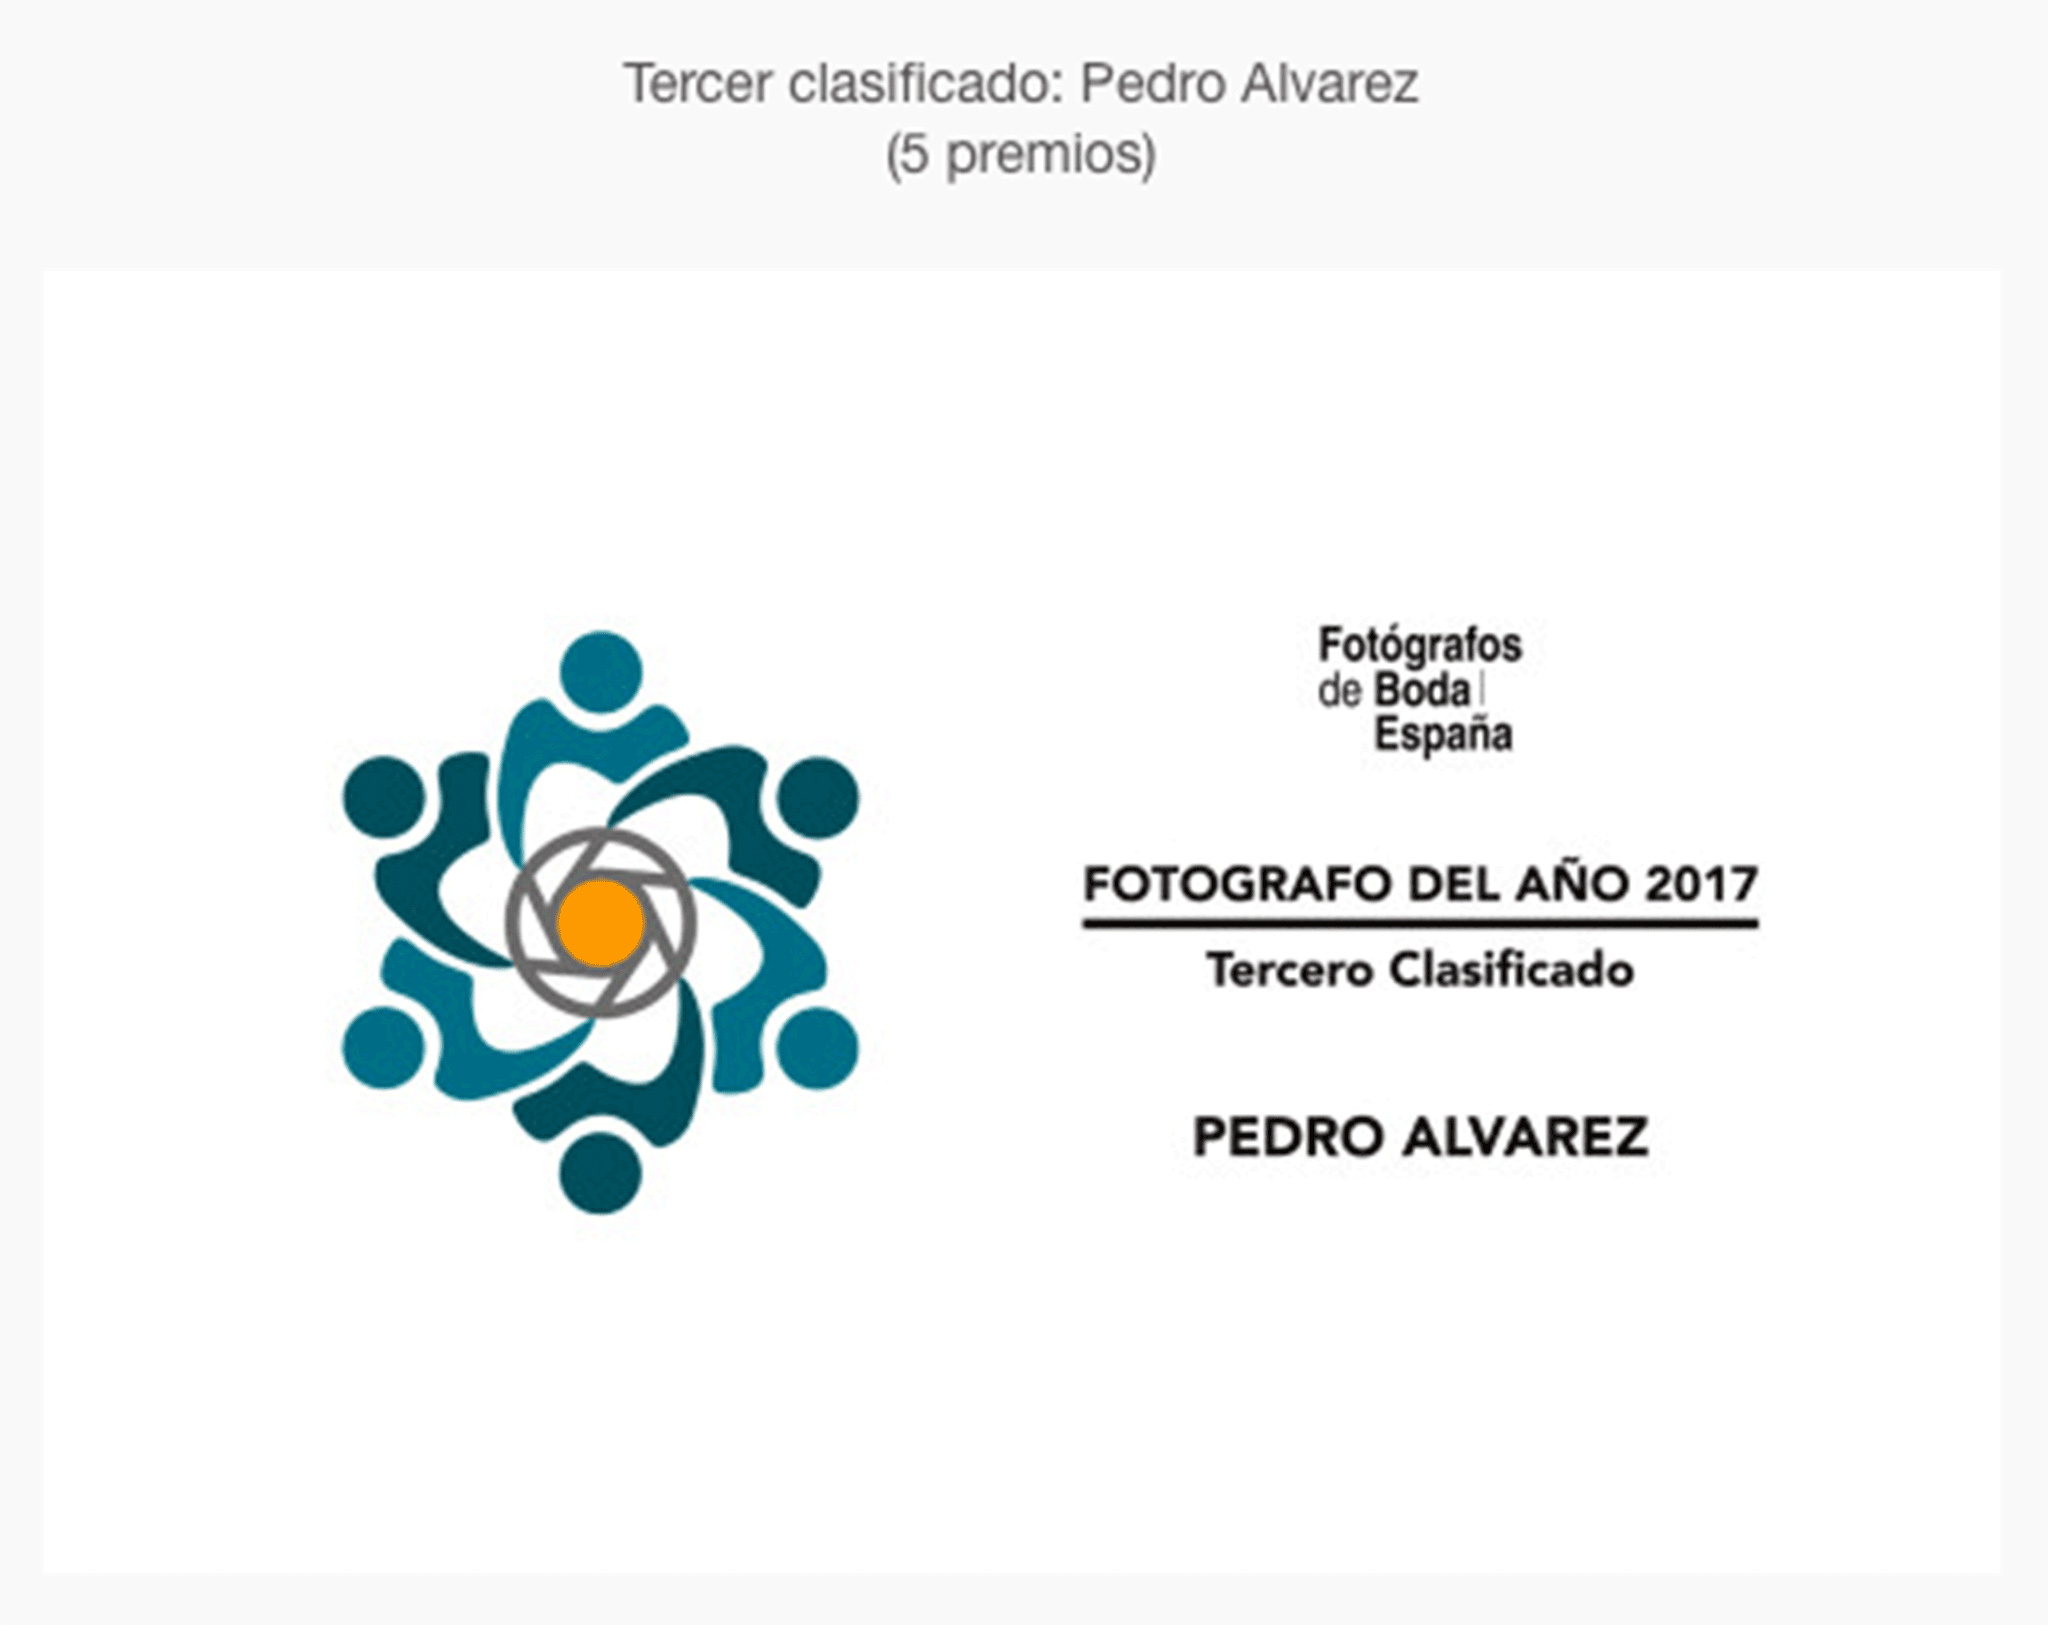 Fotografías de boda premiadas a Pedro Álvarez